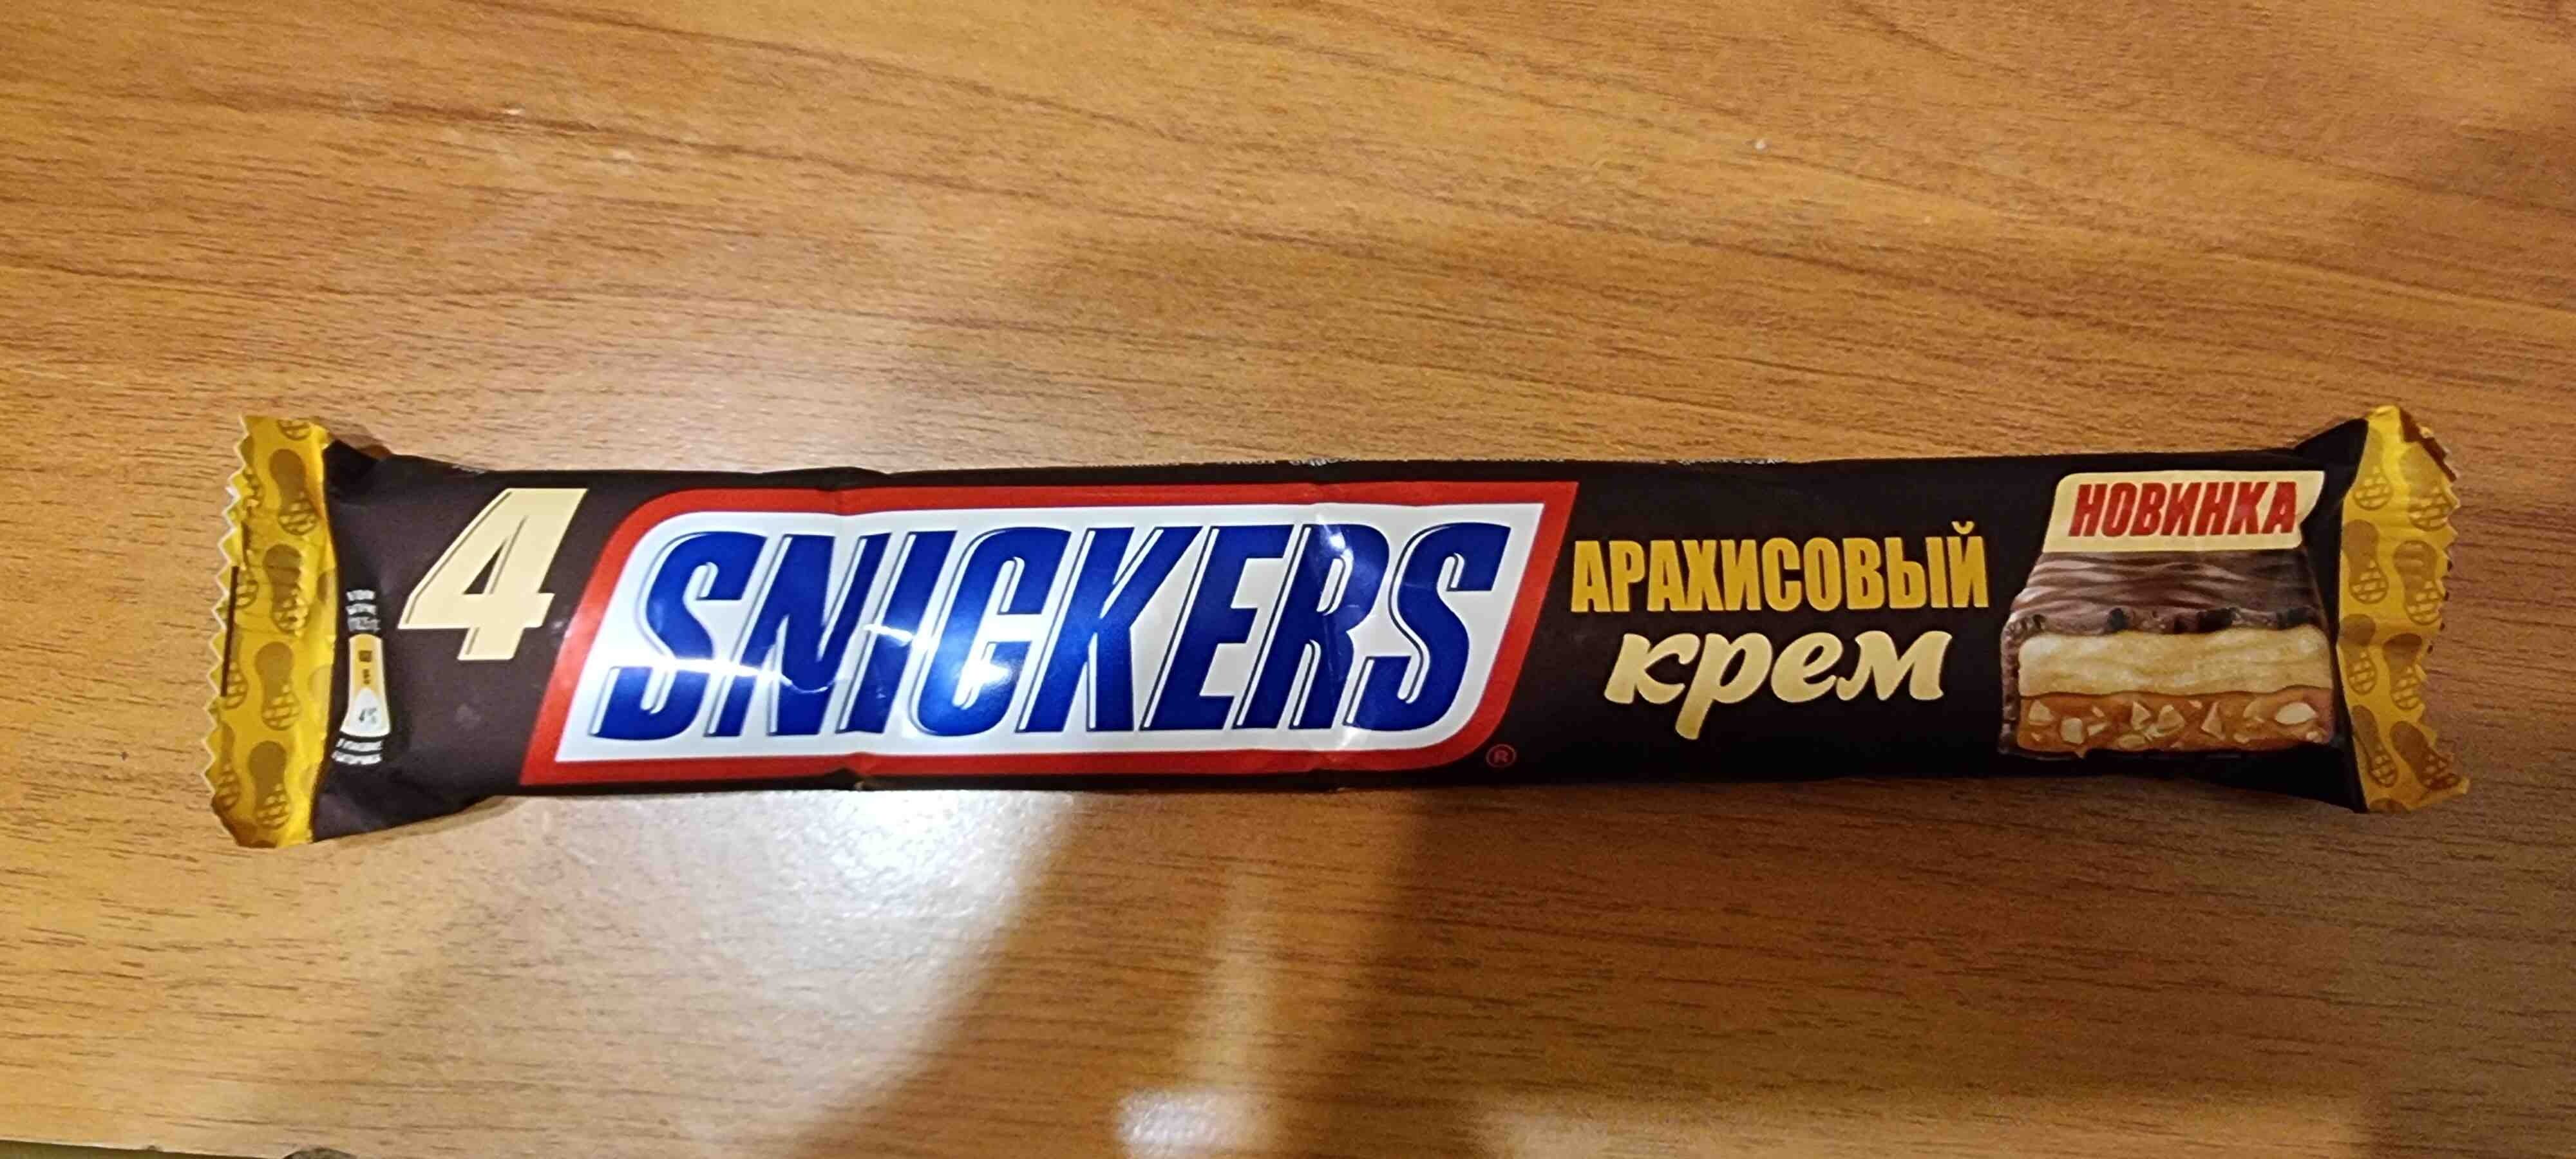 Snickers Арахисовый крем - Produkt - en